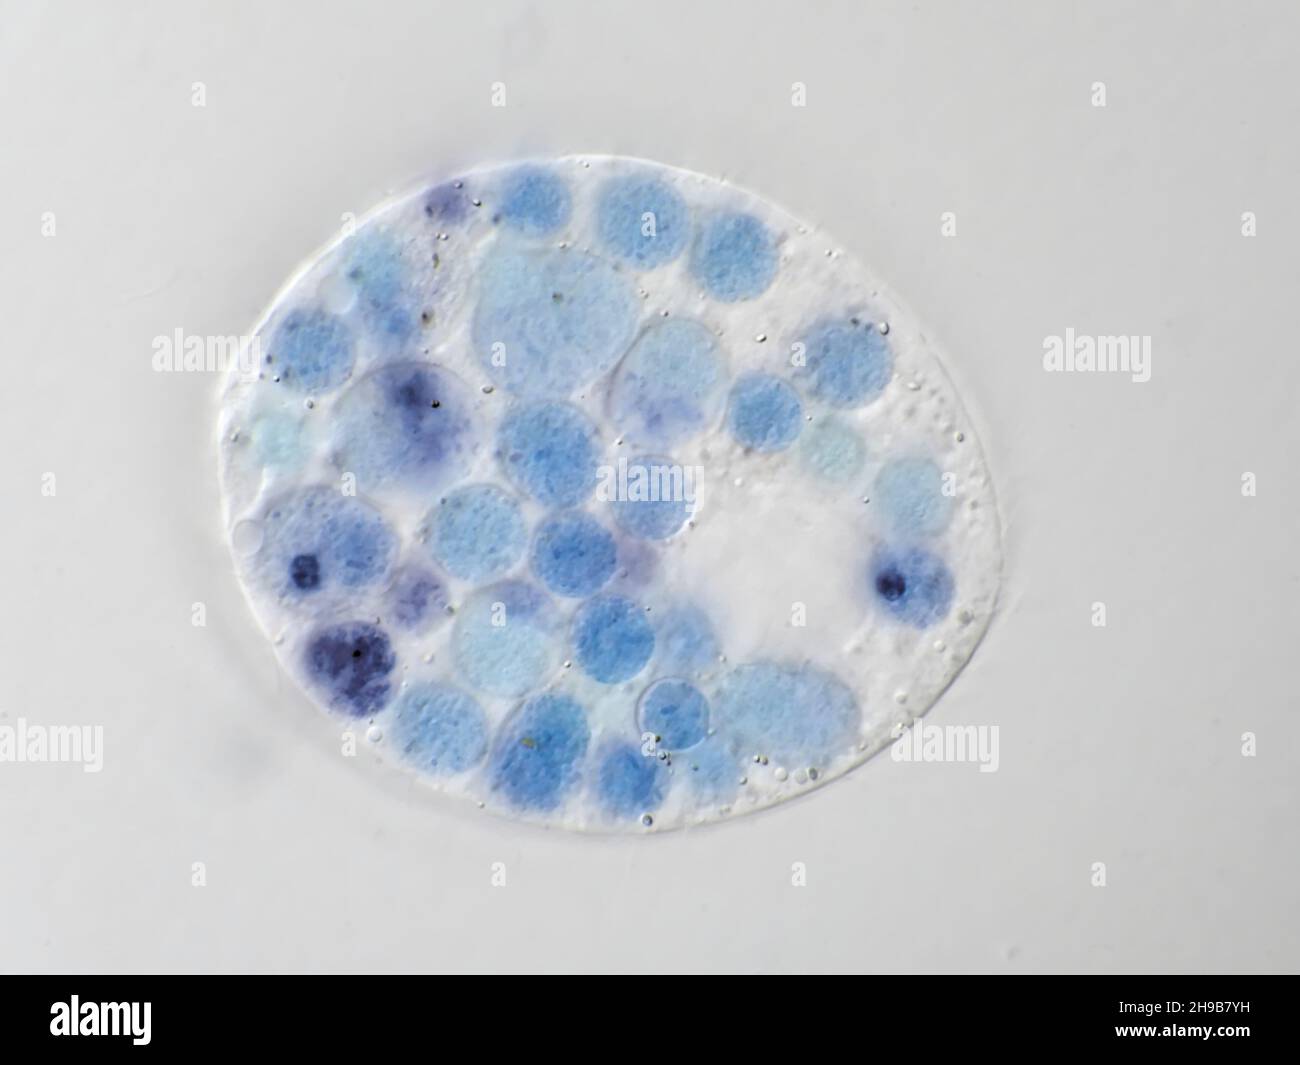 Un microbo protista da un campione d'acqua, con vacuoli per alimenti visibili colorati in blu, immagine in microscopia con campo visivo orizzontale di circa 121 micrometri Foto Stock